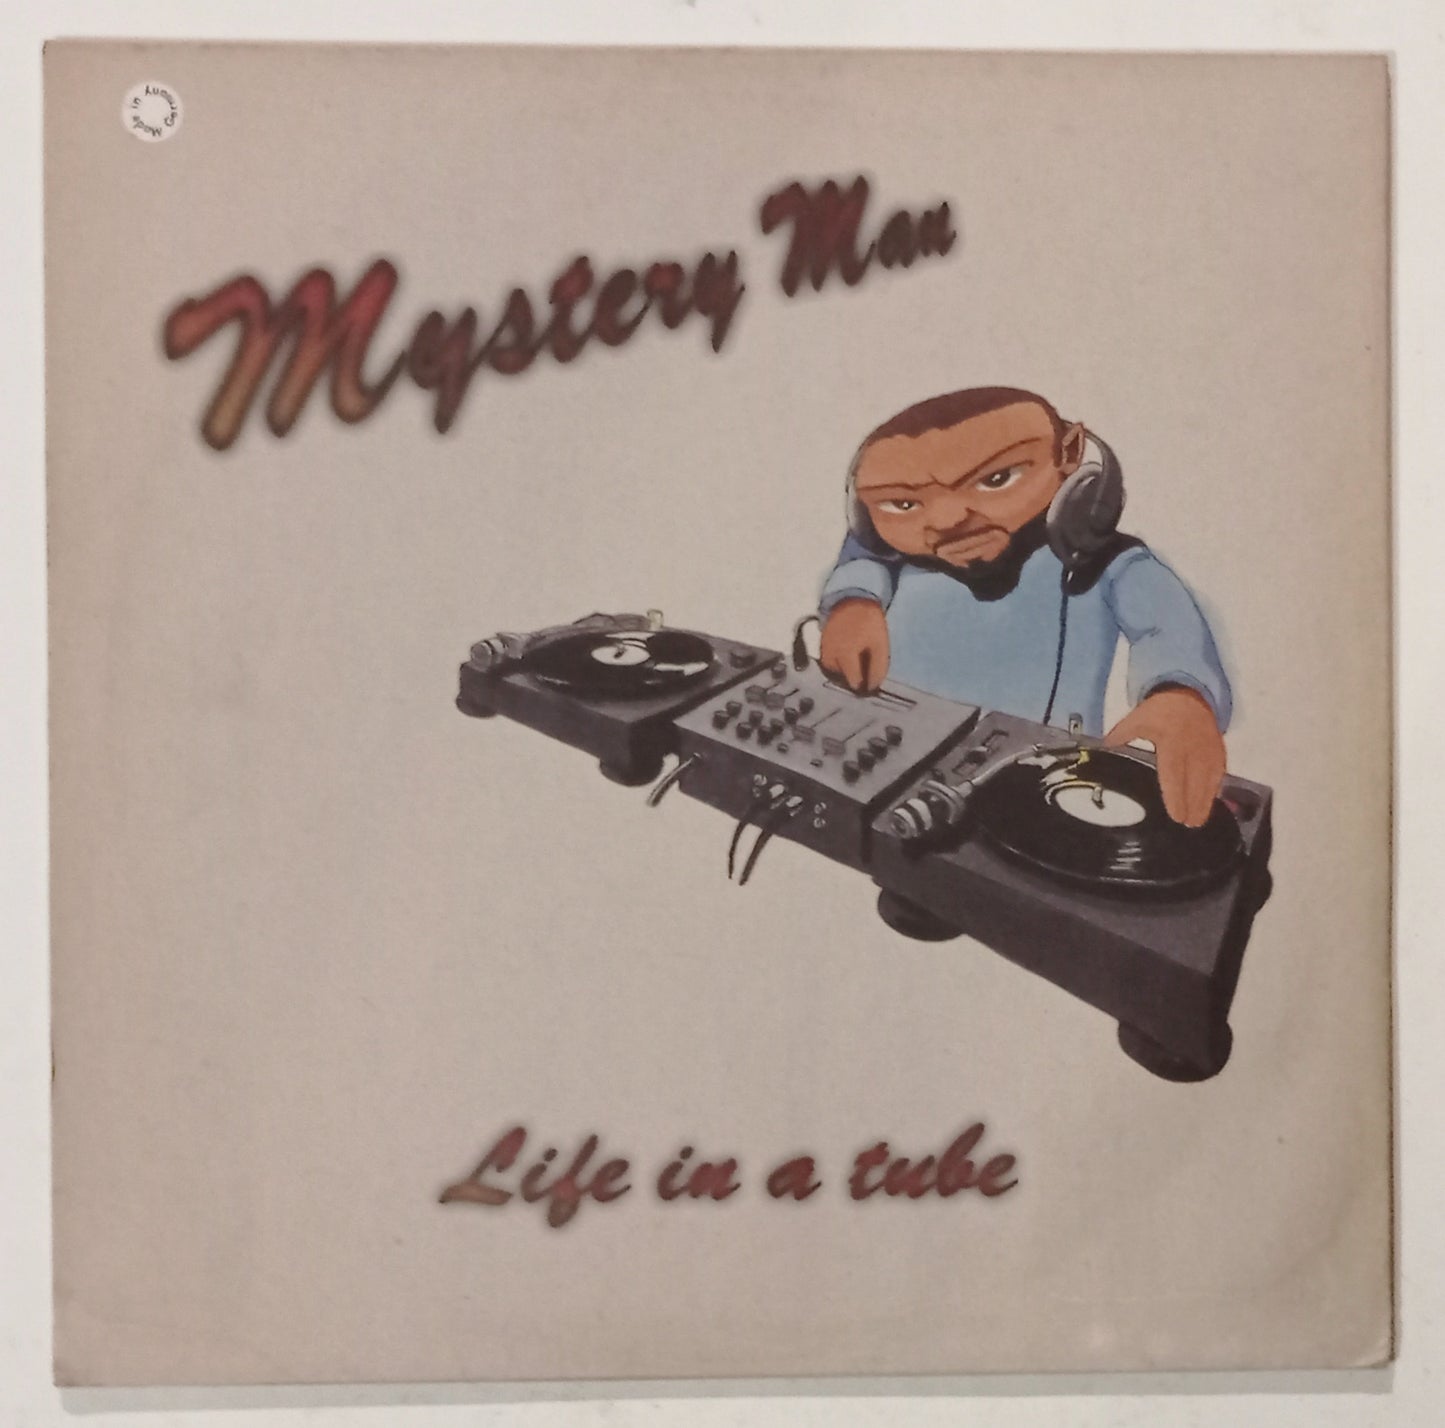 Mistery Man - Life In A Tube (Vinyl 12" - Importado Alemanha - USADO)